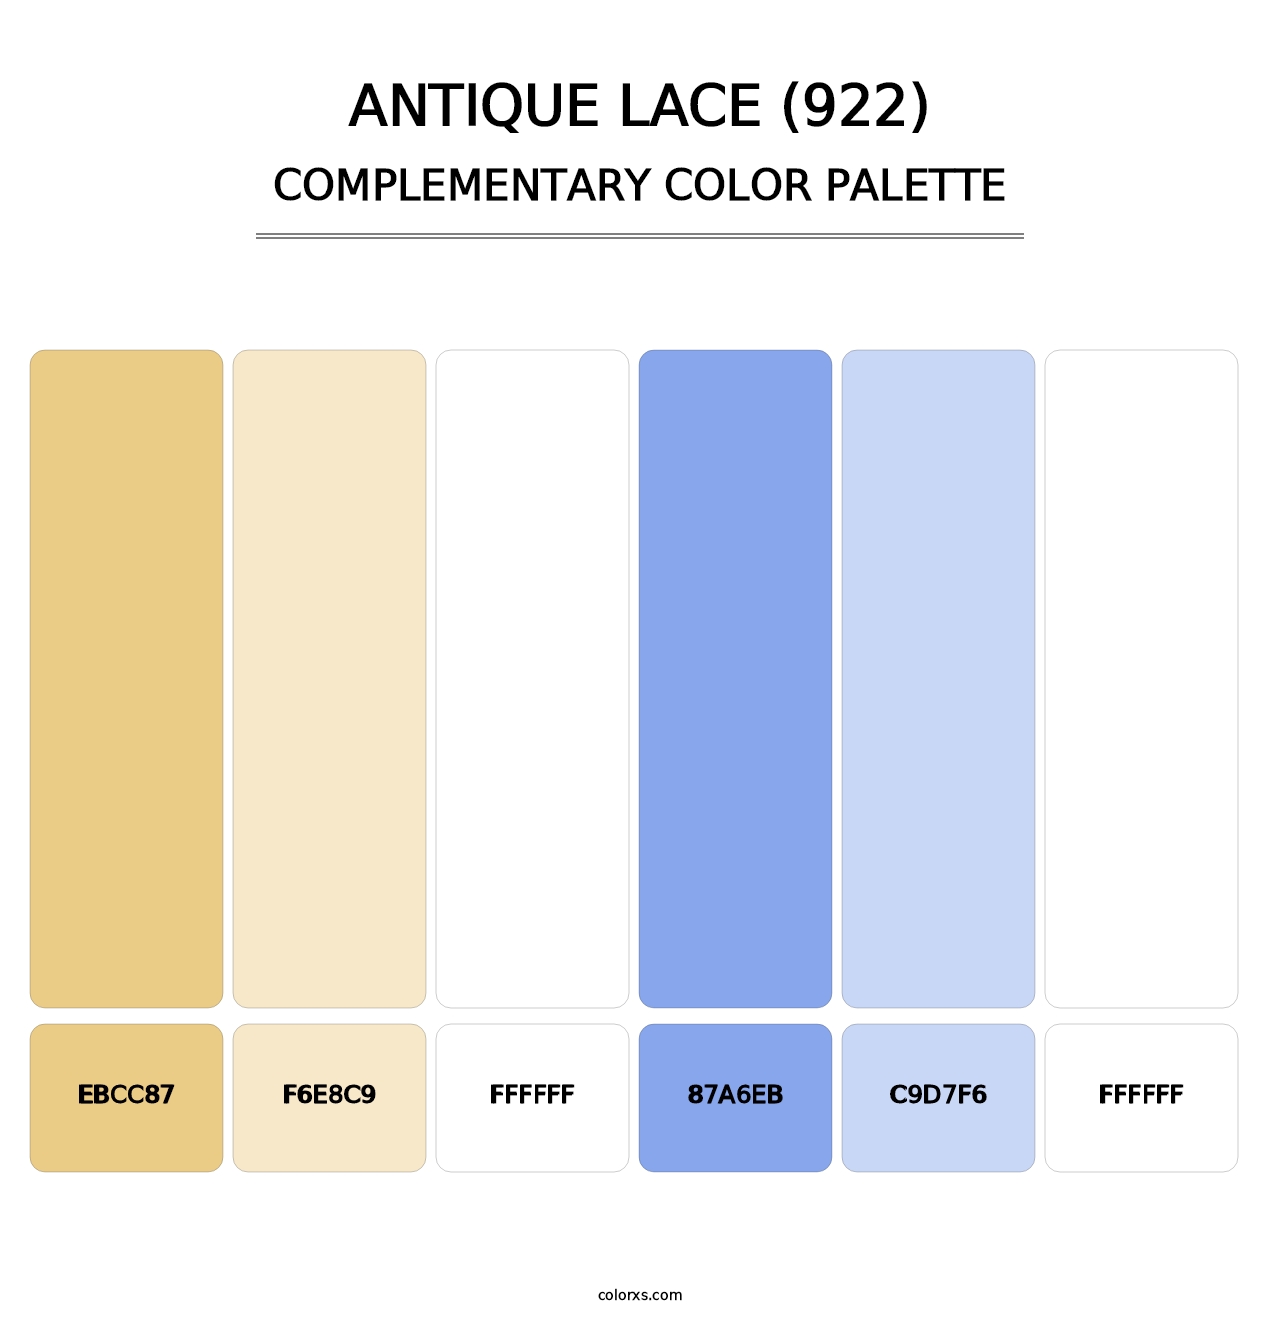 Antique Lace (922) - Complementary Color Palette